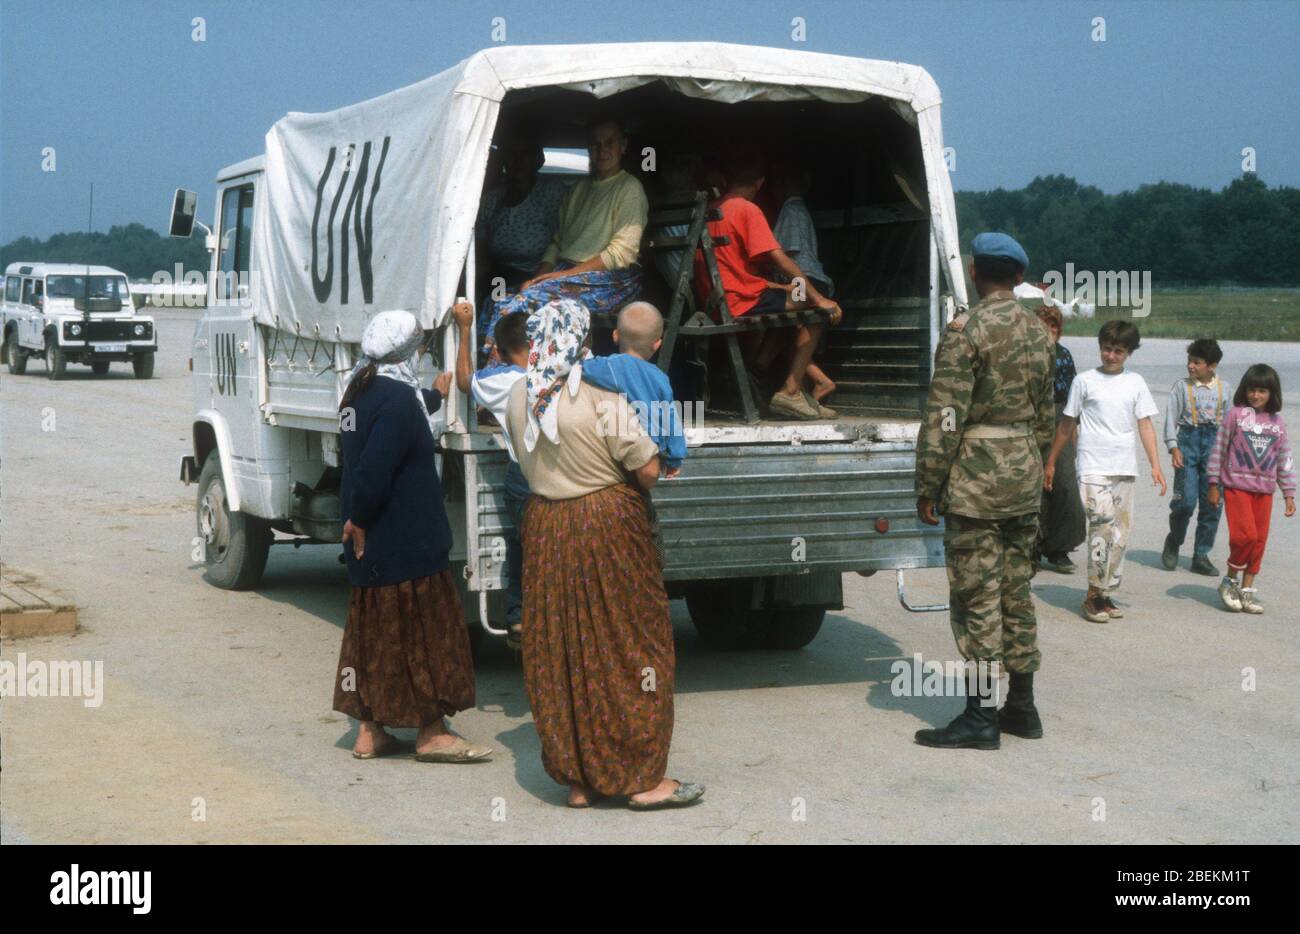 1995 Tuzla - Flugplatz Tuzla UN-Flüchtlingslager für bosnische Muslime, die vor dem Massaker von Srebrenica während des Bosnienkrieges fliehen. Fahrzeug sammeln Flüchtlinge abgebildet. Stockfoto